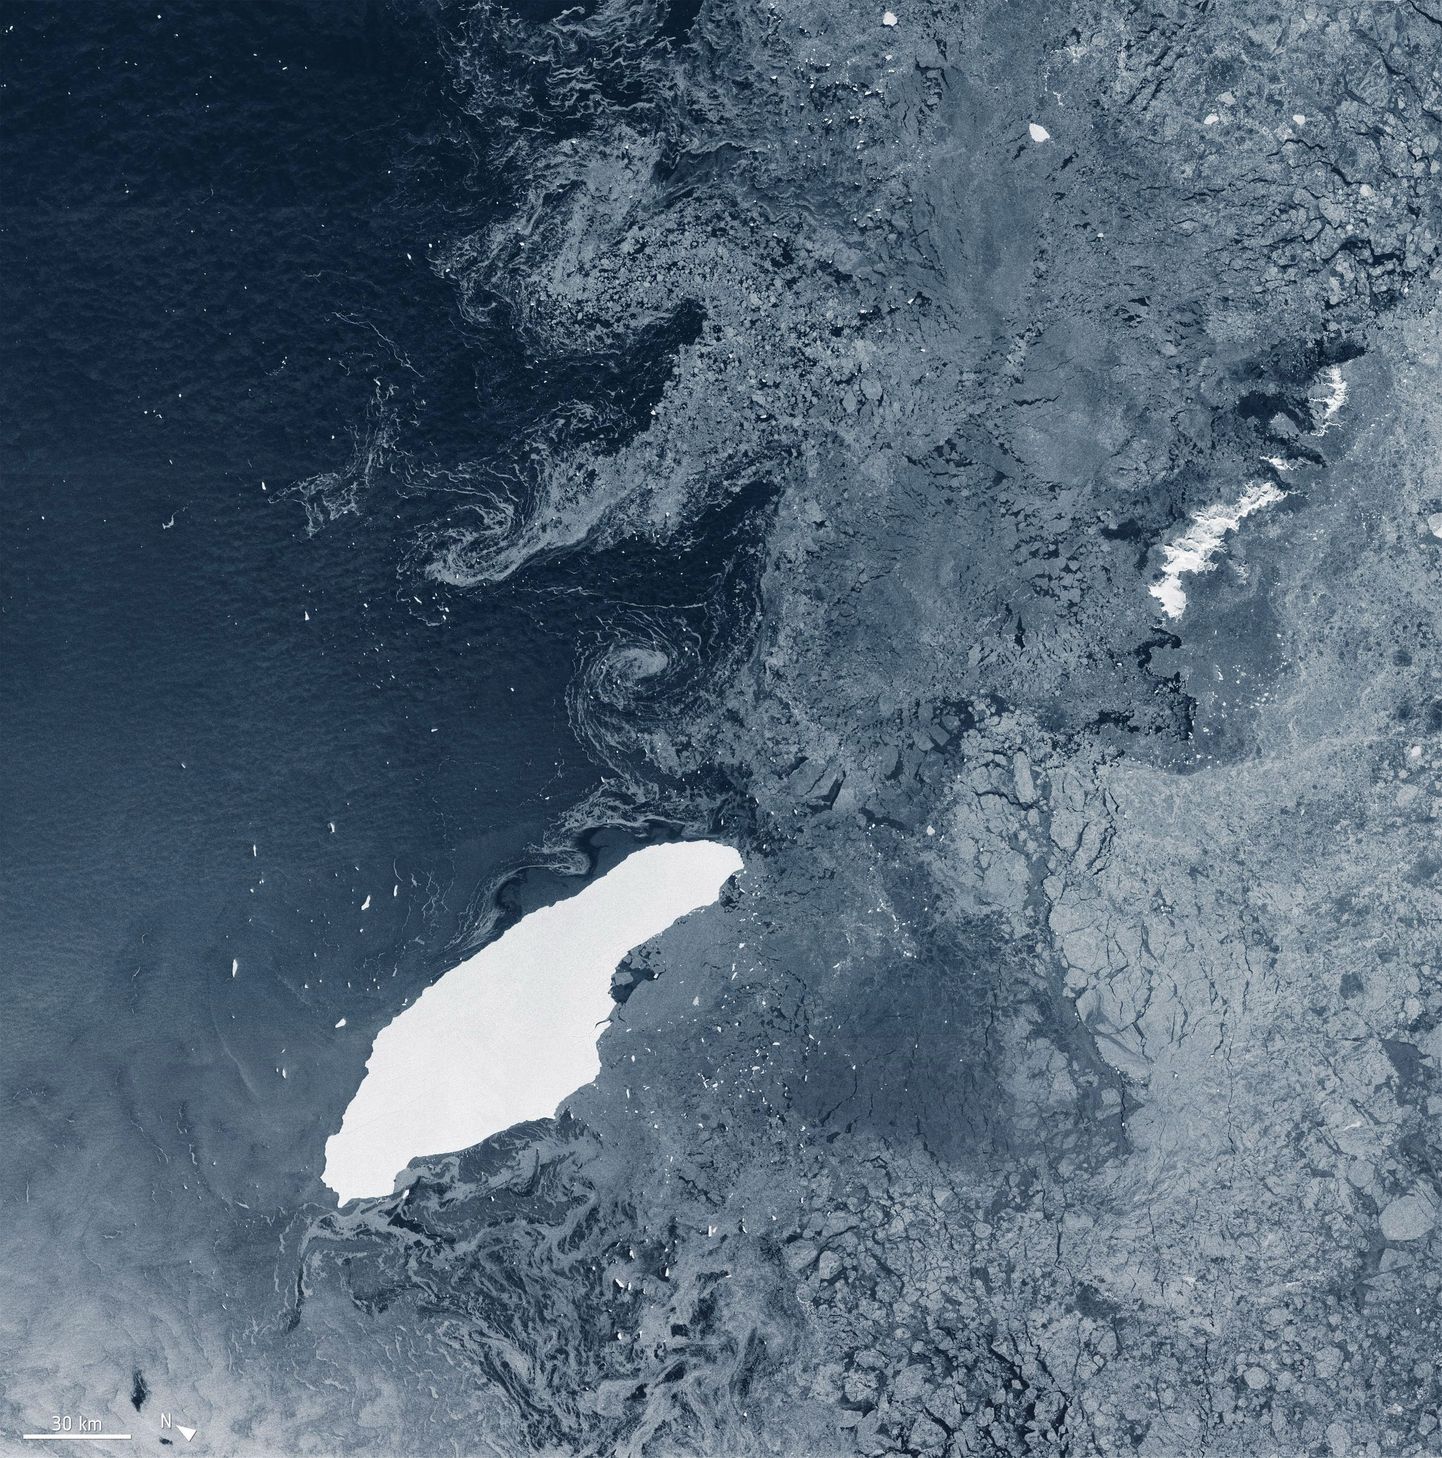 Euroopa kosmoseagentuuri (ESA) foto maailma suurimast jäämäest A-68 (valge) Atlandi ookeani lõunaosas